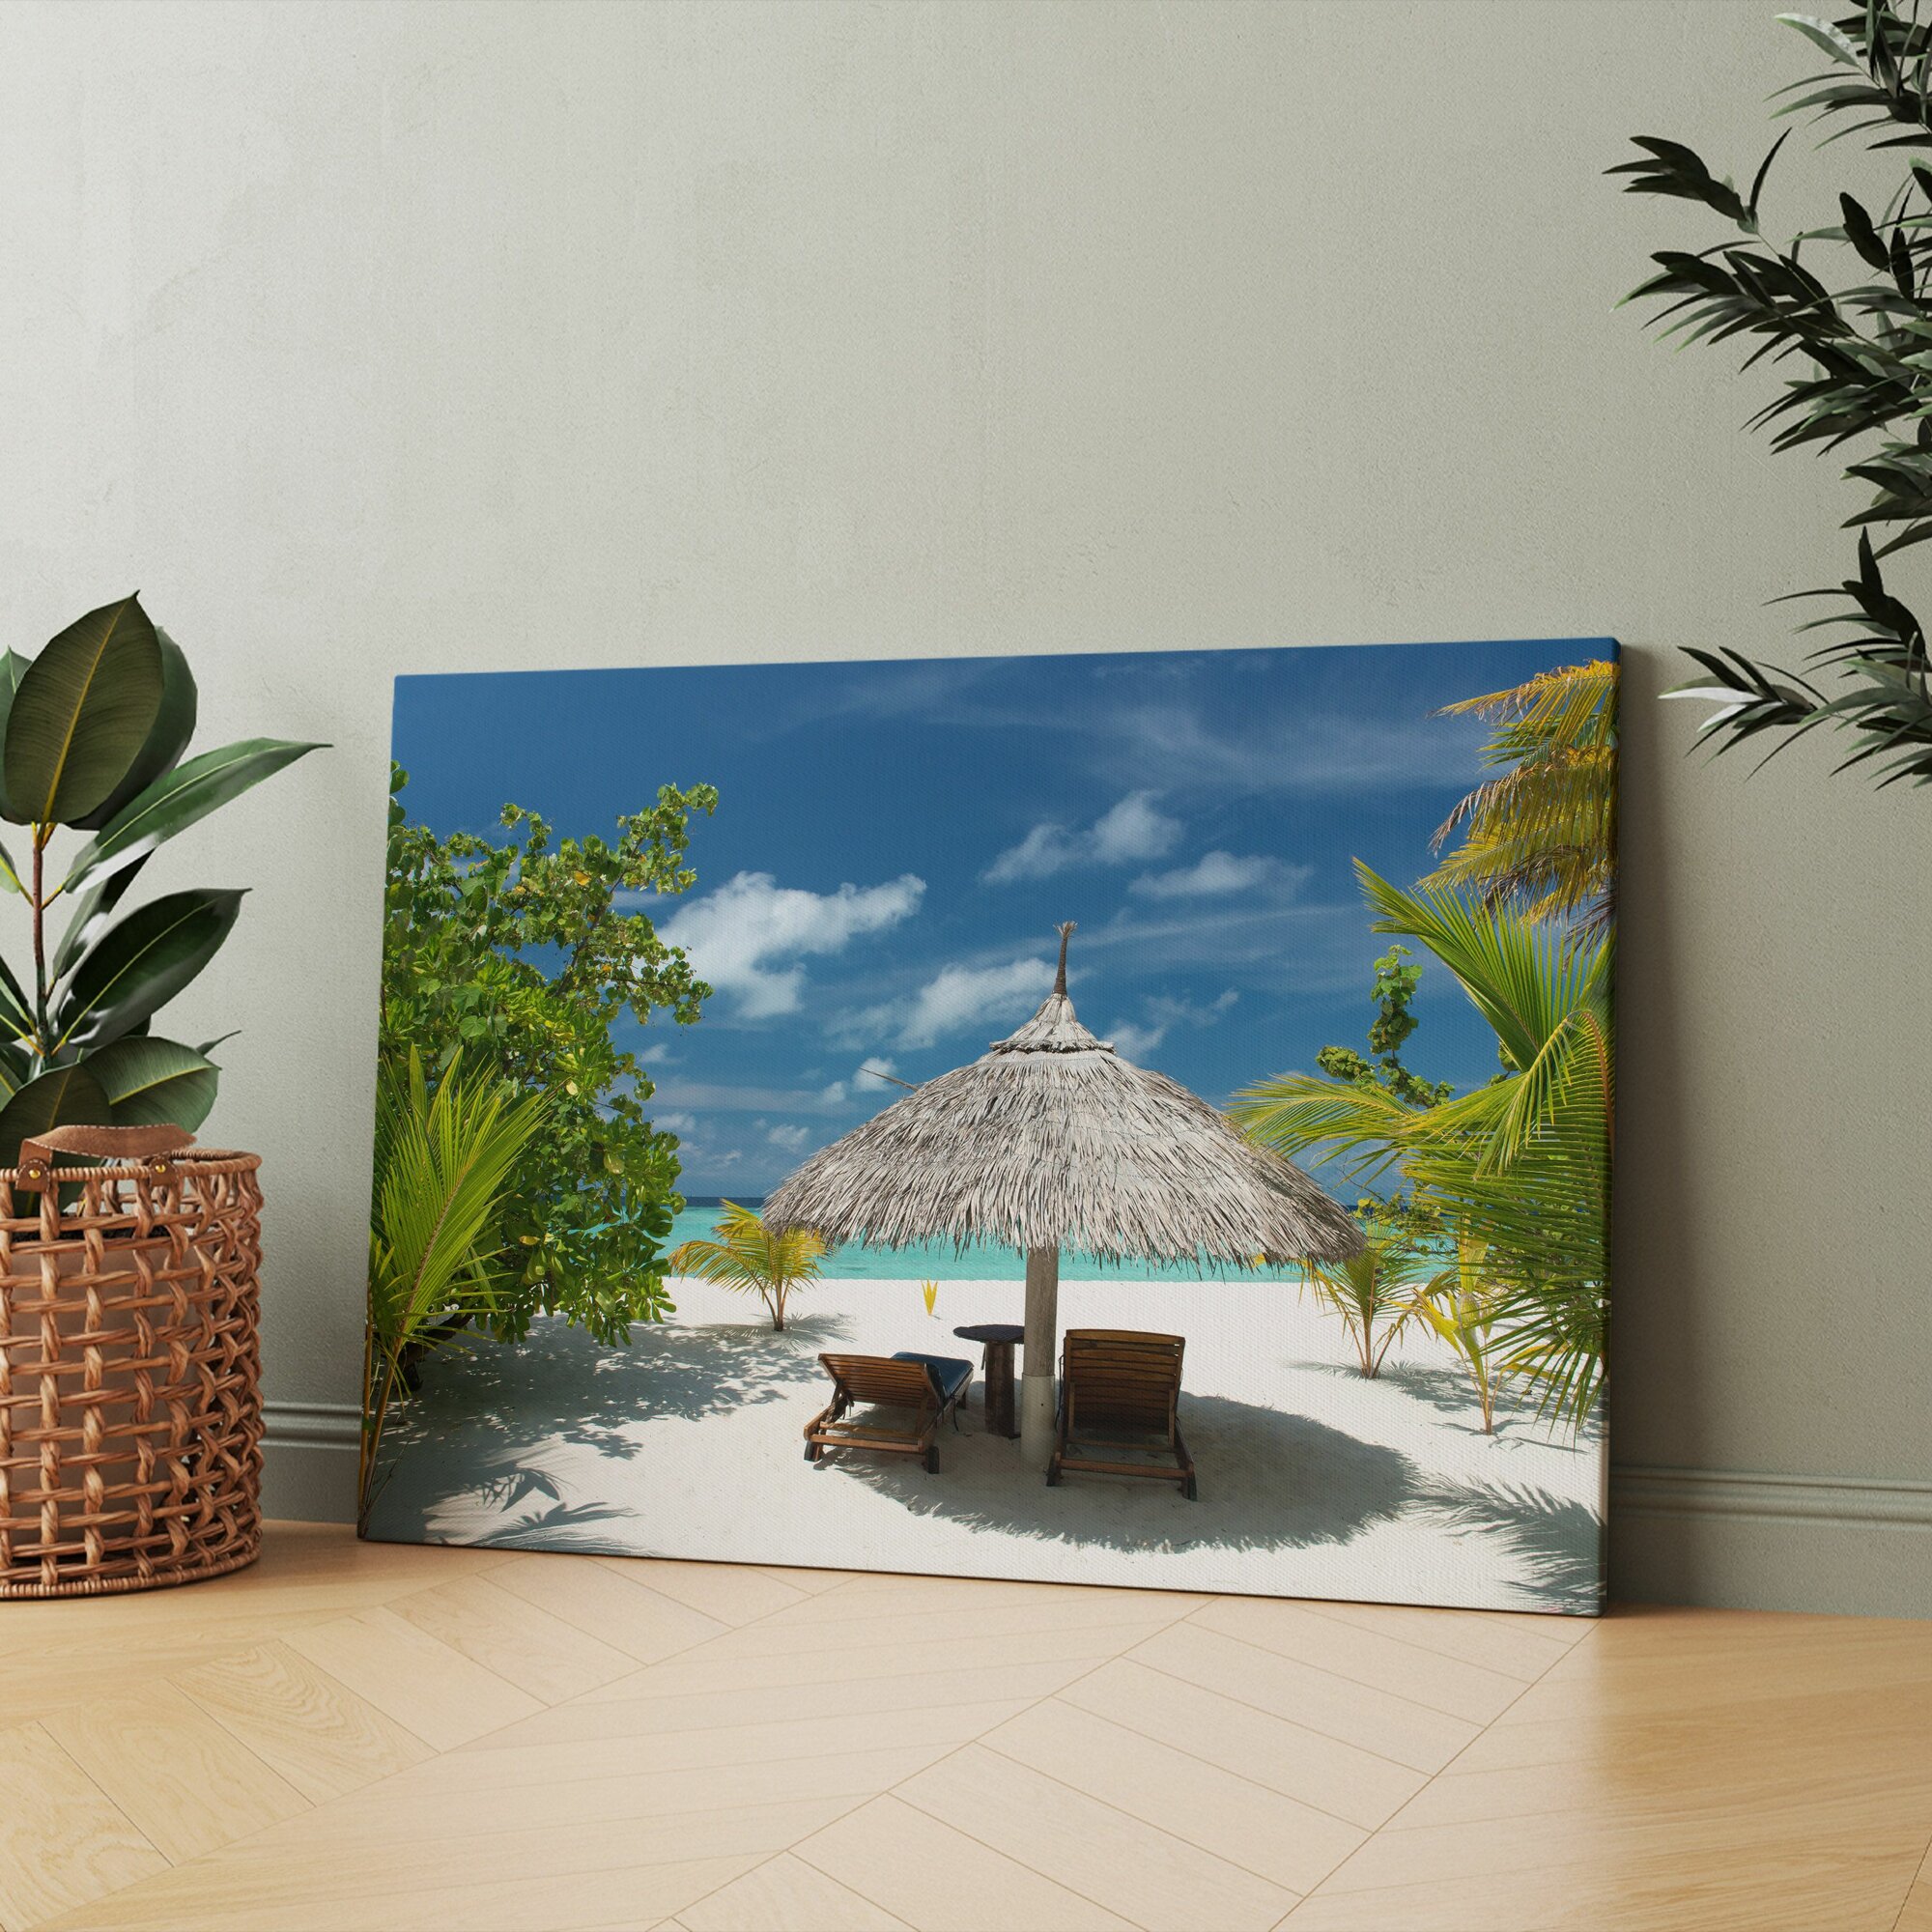 Картина на холсте "Два шезлонга под соломенным зонтиком на пляже" 20x30 см. Интерьерная, на стену.